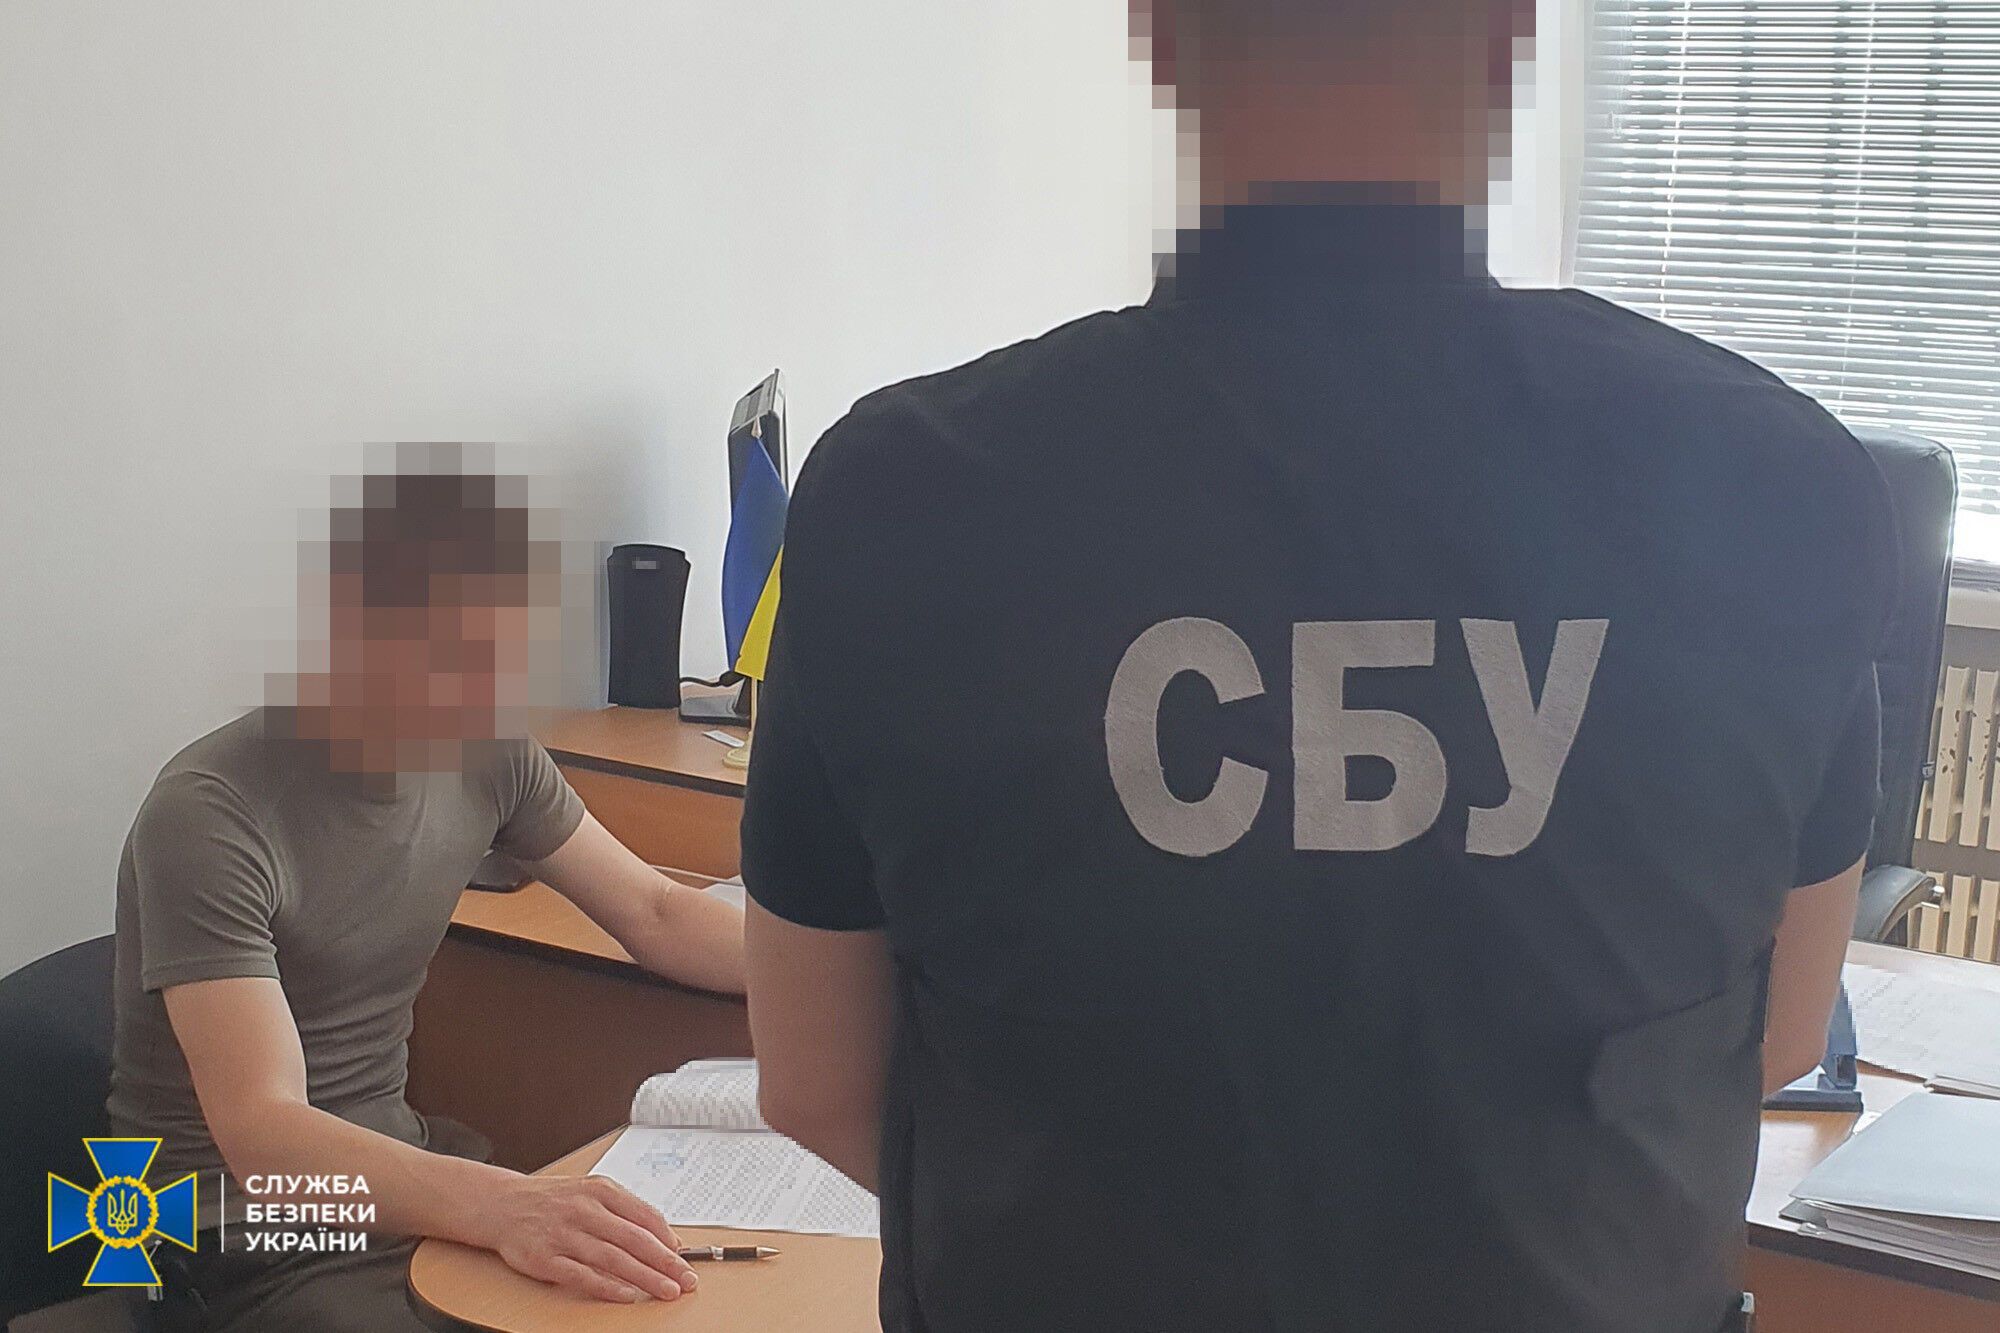 СБУ задержала двух блогеров, "засветивших" позиции ВСУ в соцсетях. Фото